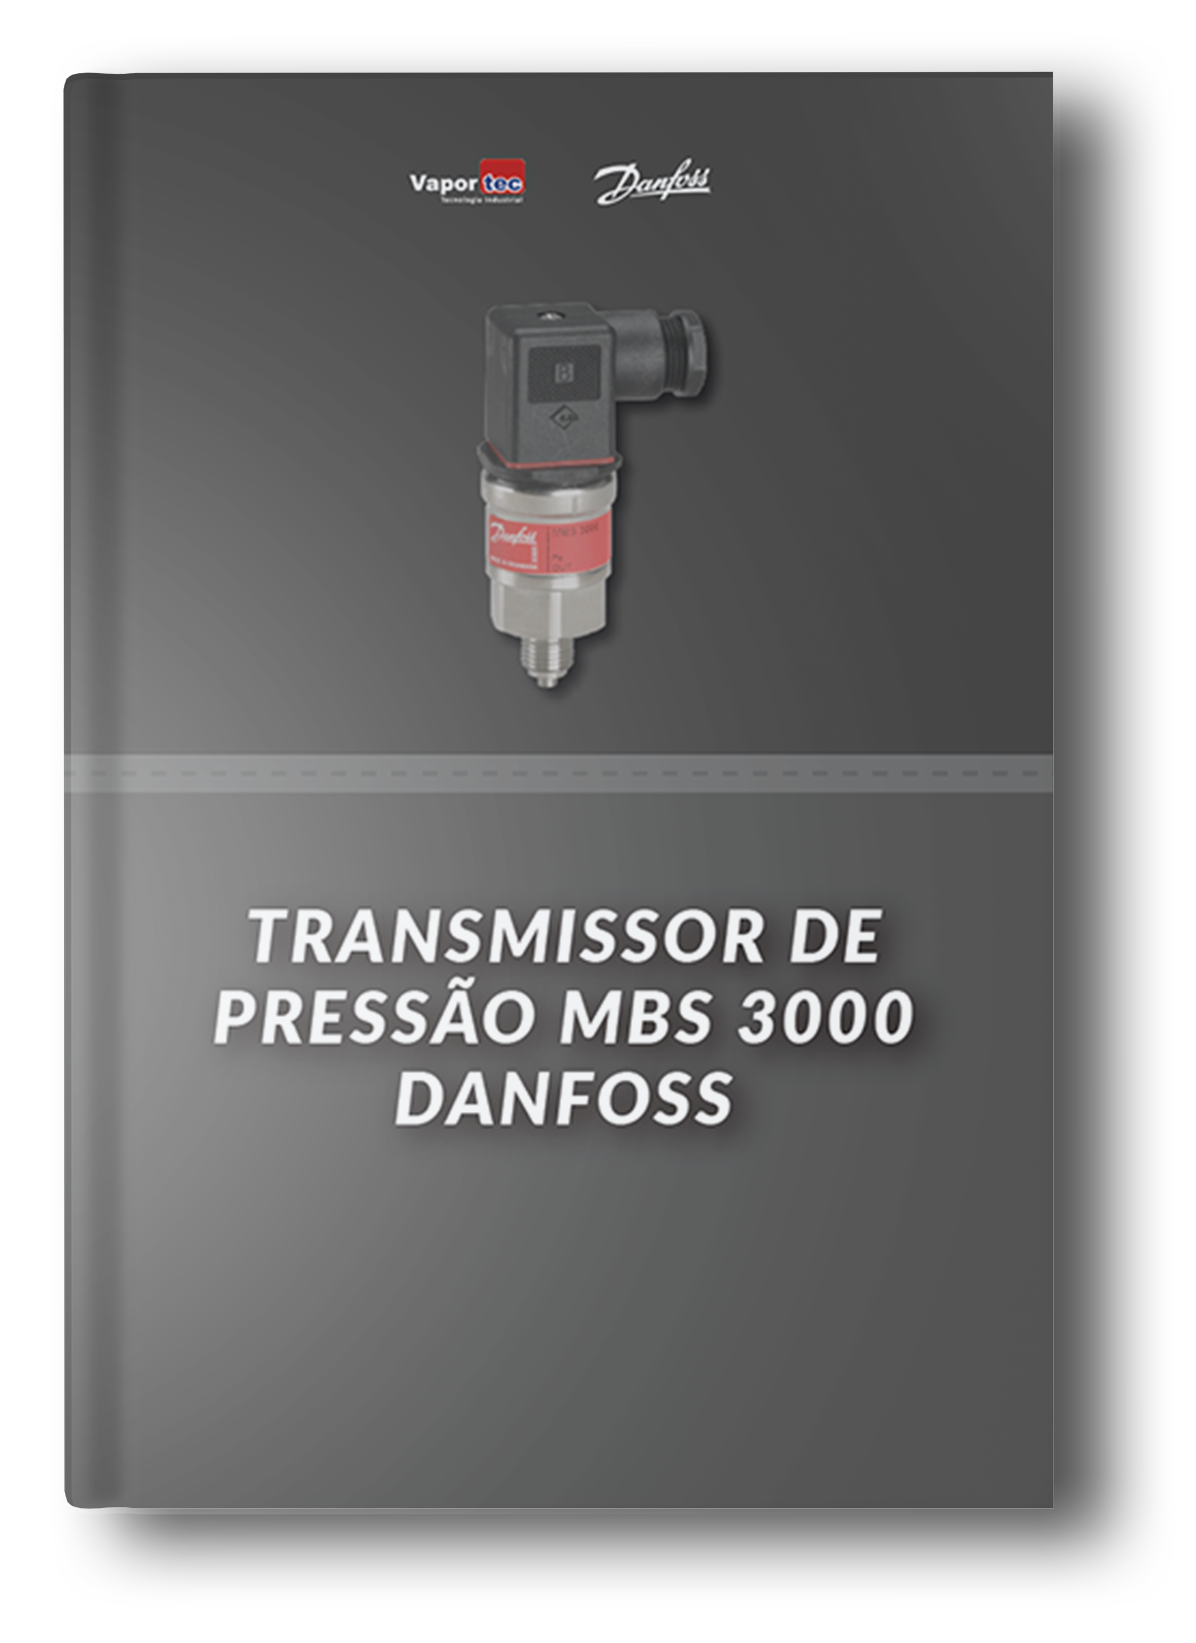 Transmissor de pressão MBS 3000 Danfoss